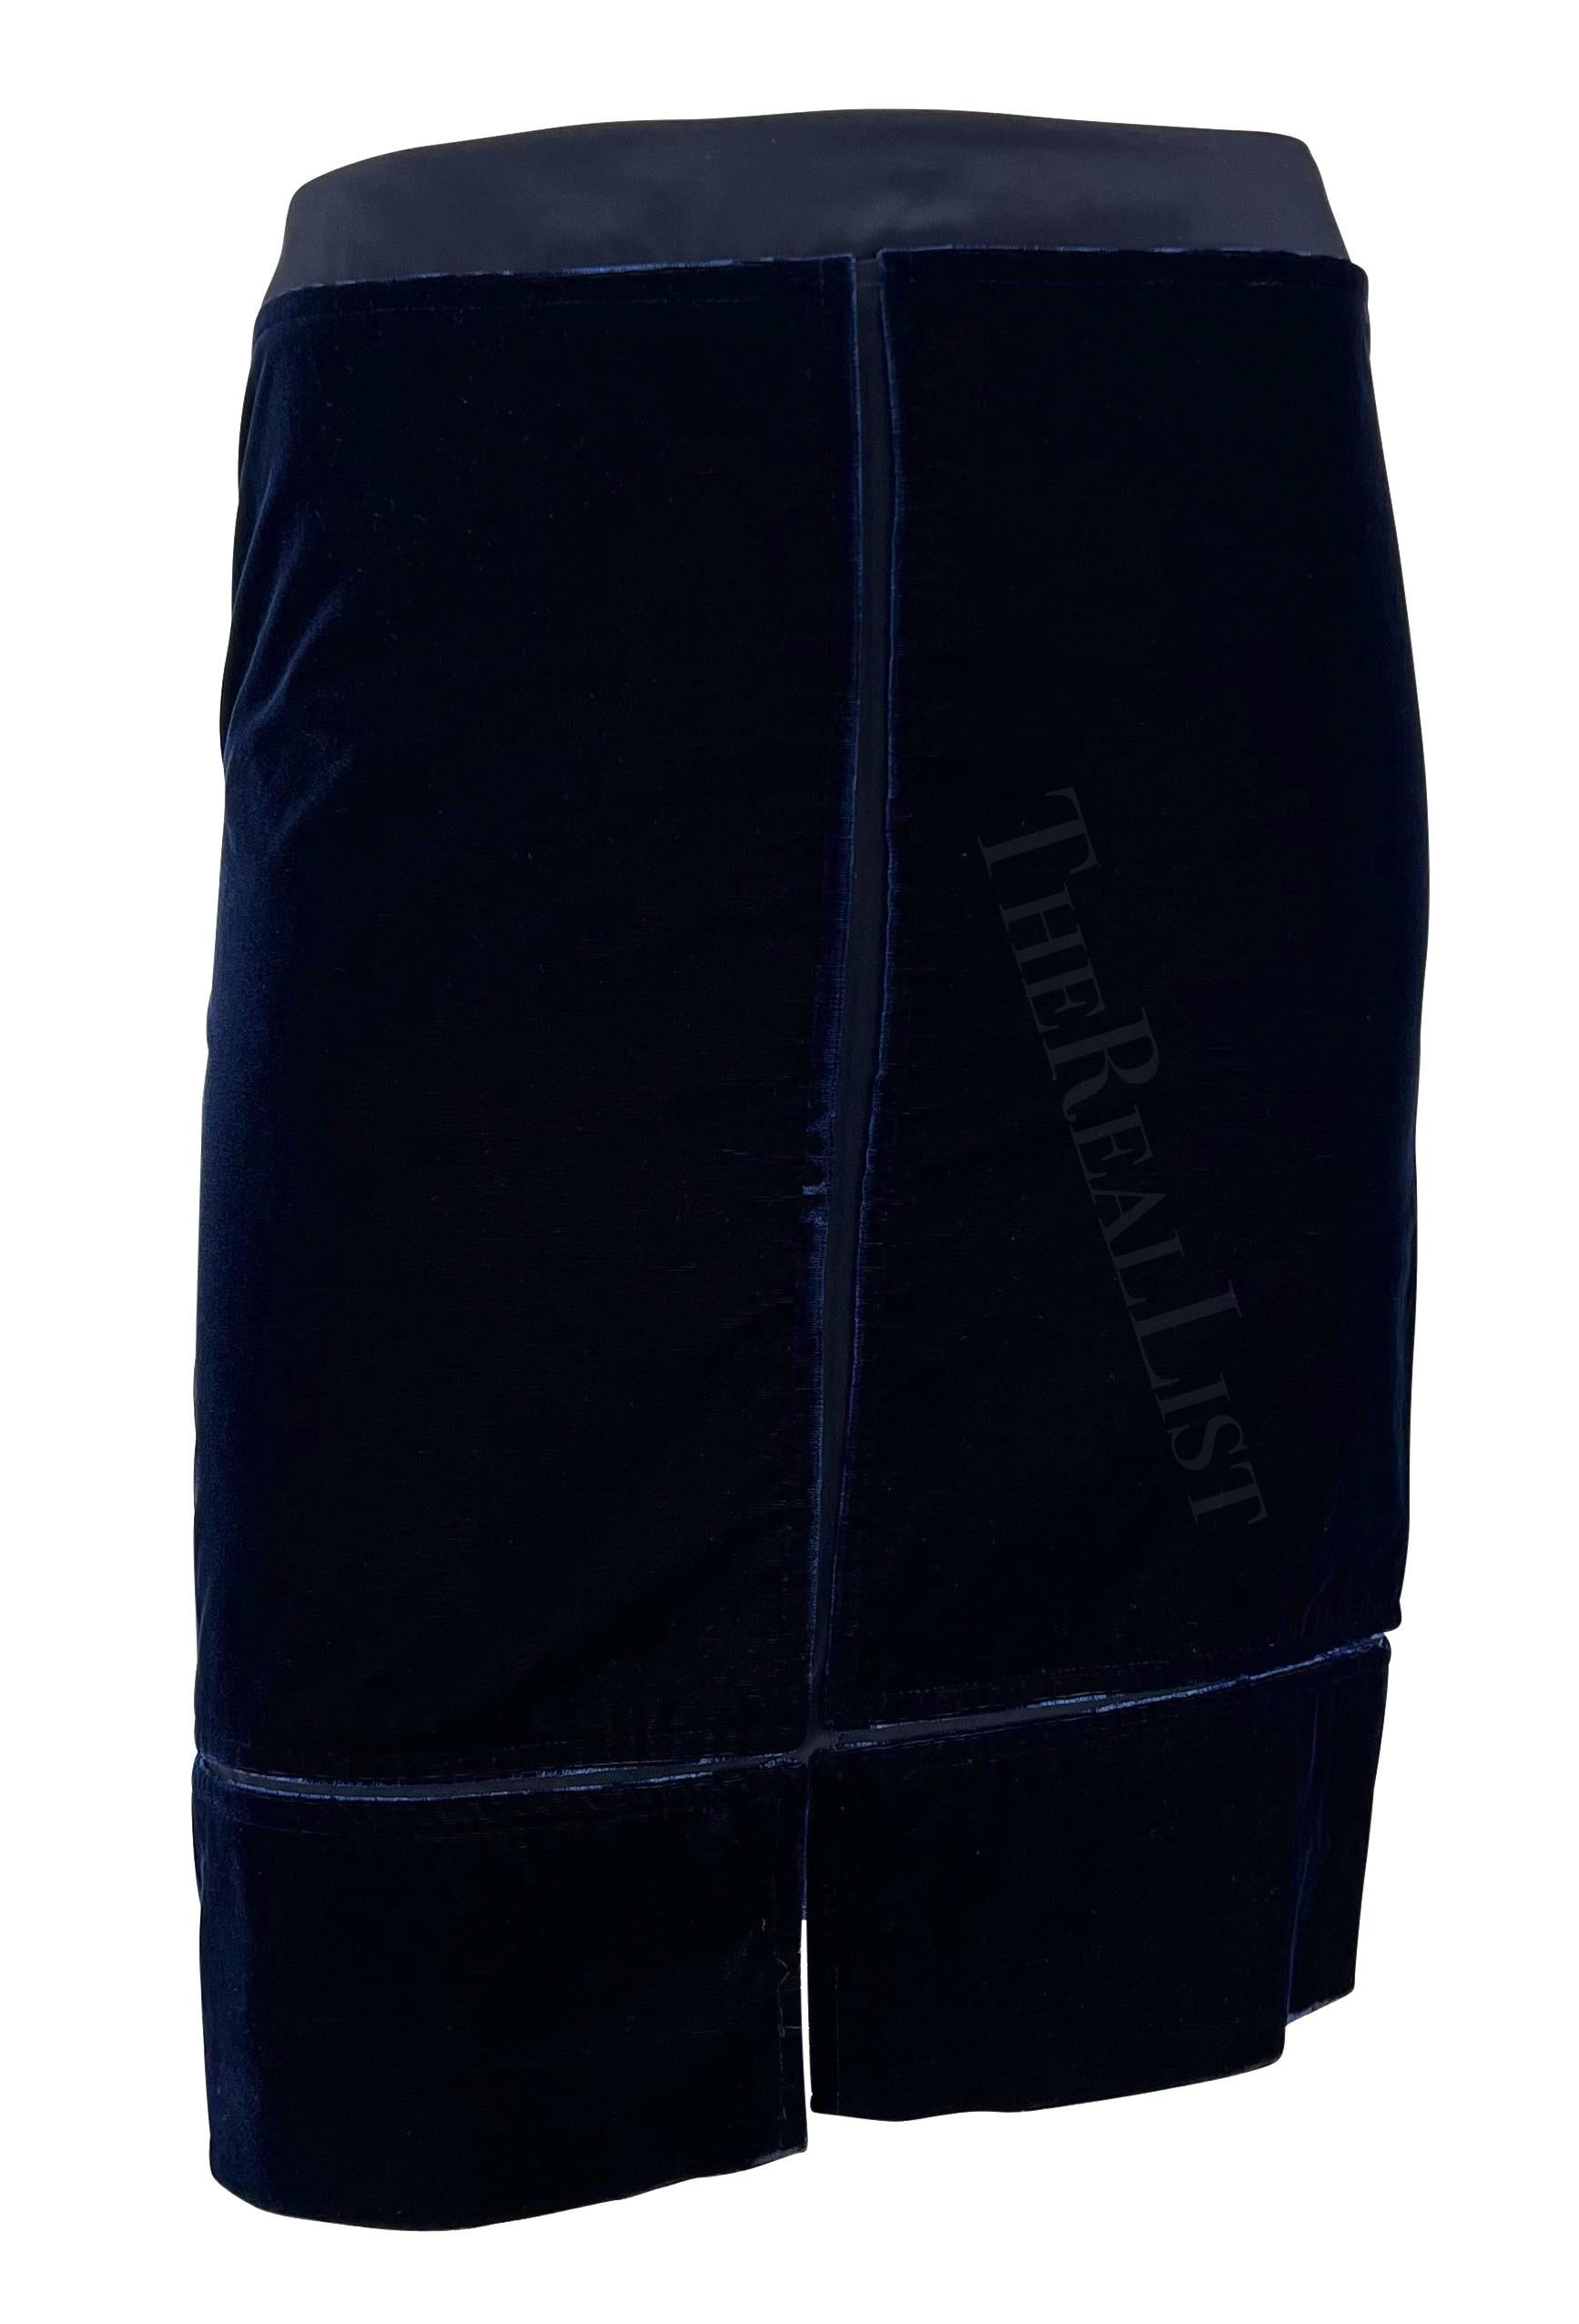 F/W 2002 Yves Saint Laurent by Tom Ford Blue Velvet Panel Skirt Suit  For Sale 5